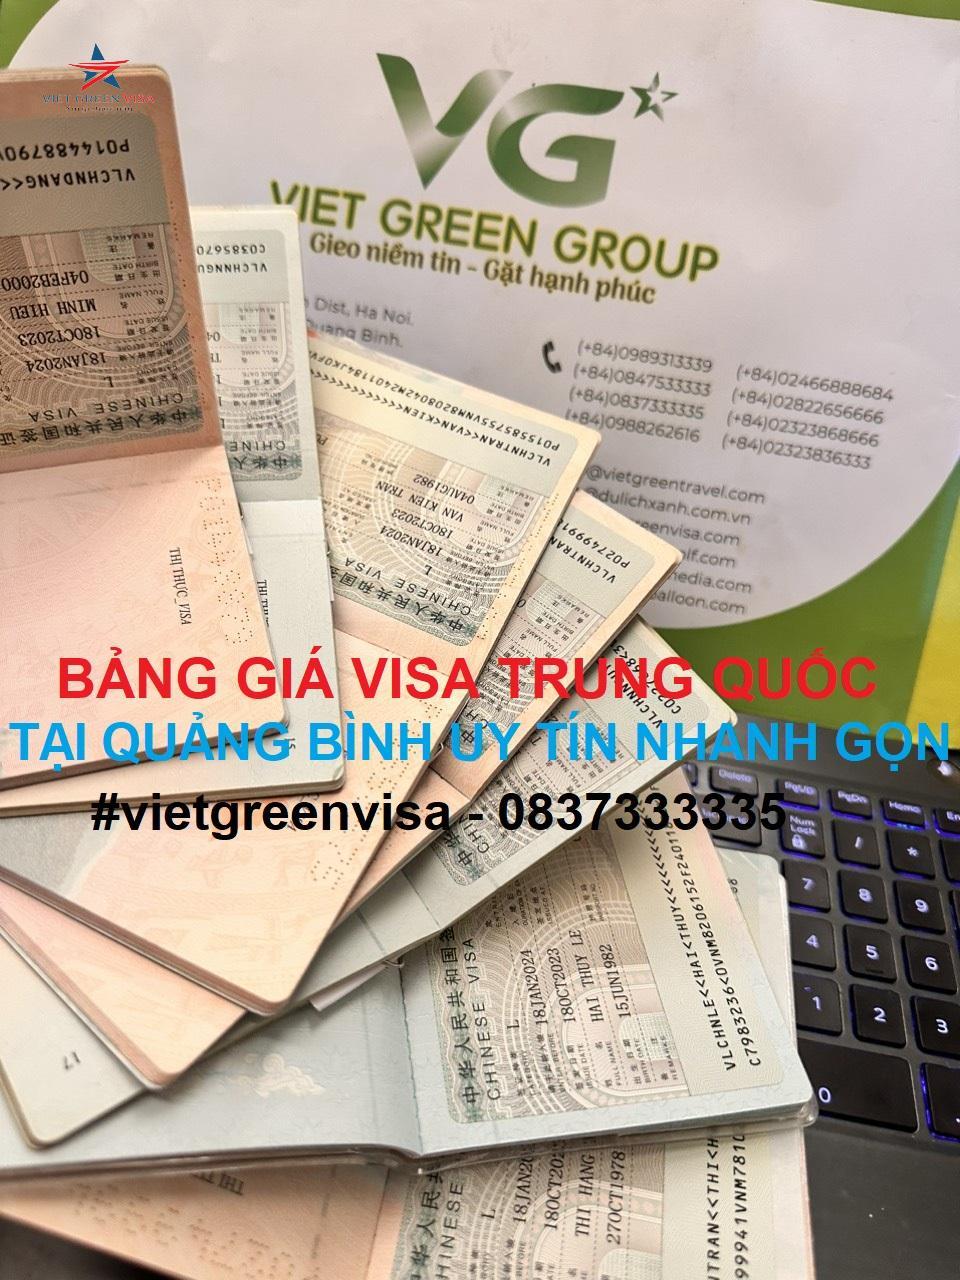 Dịch vụ xin visa Trung Quốc tại Quảng Bình uy tín nhanh gọn